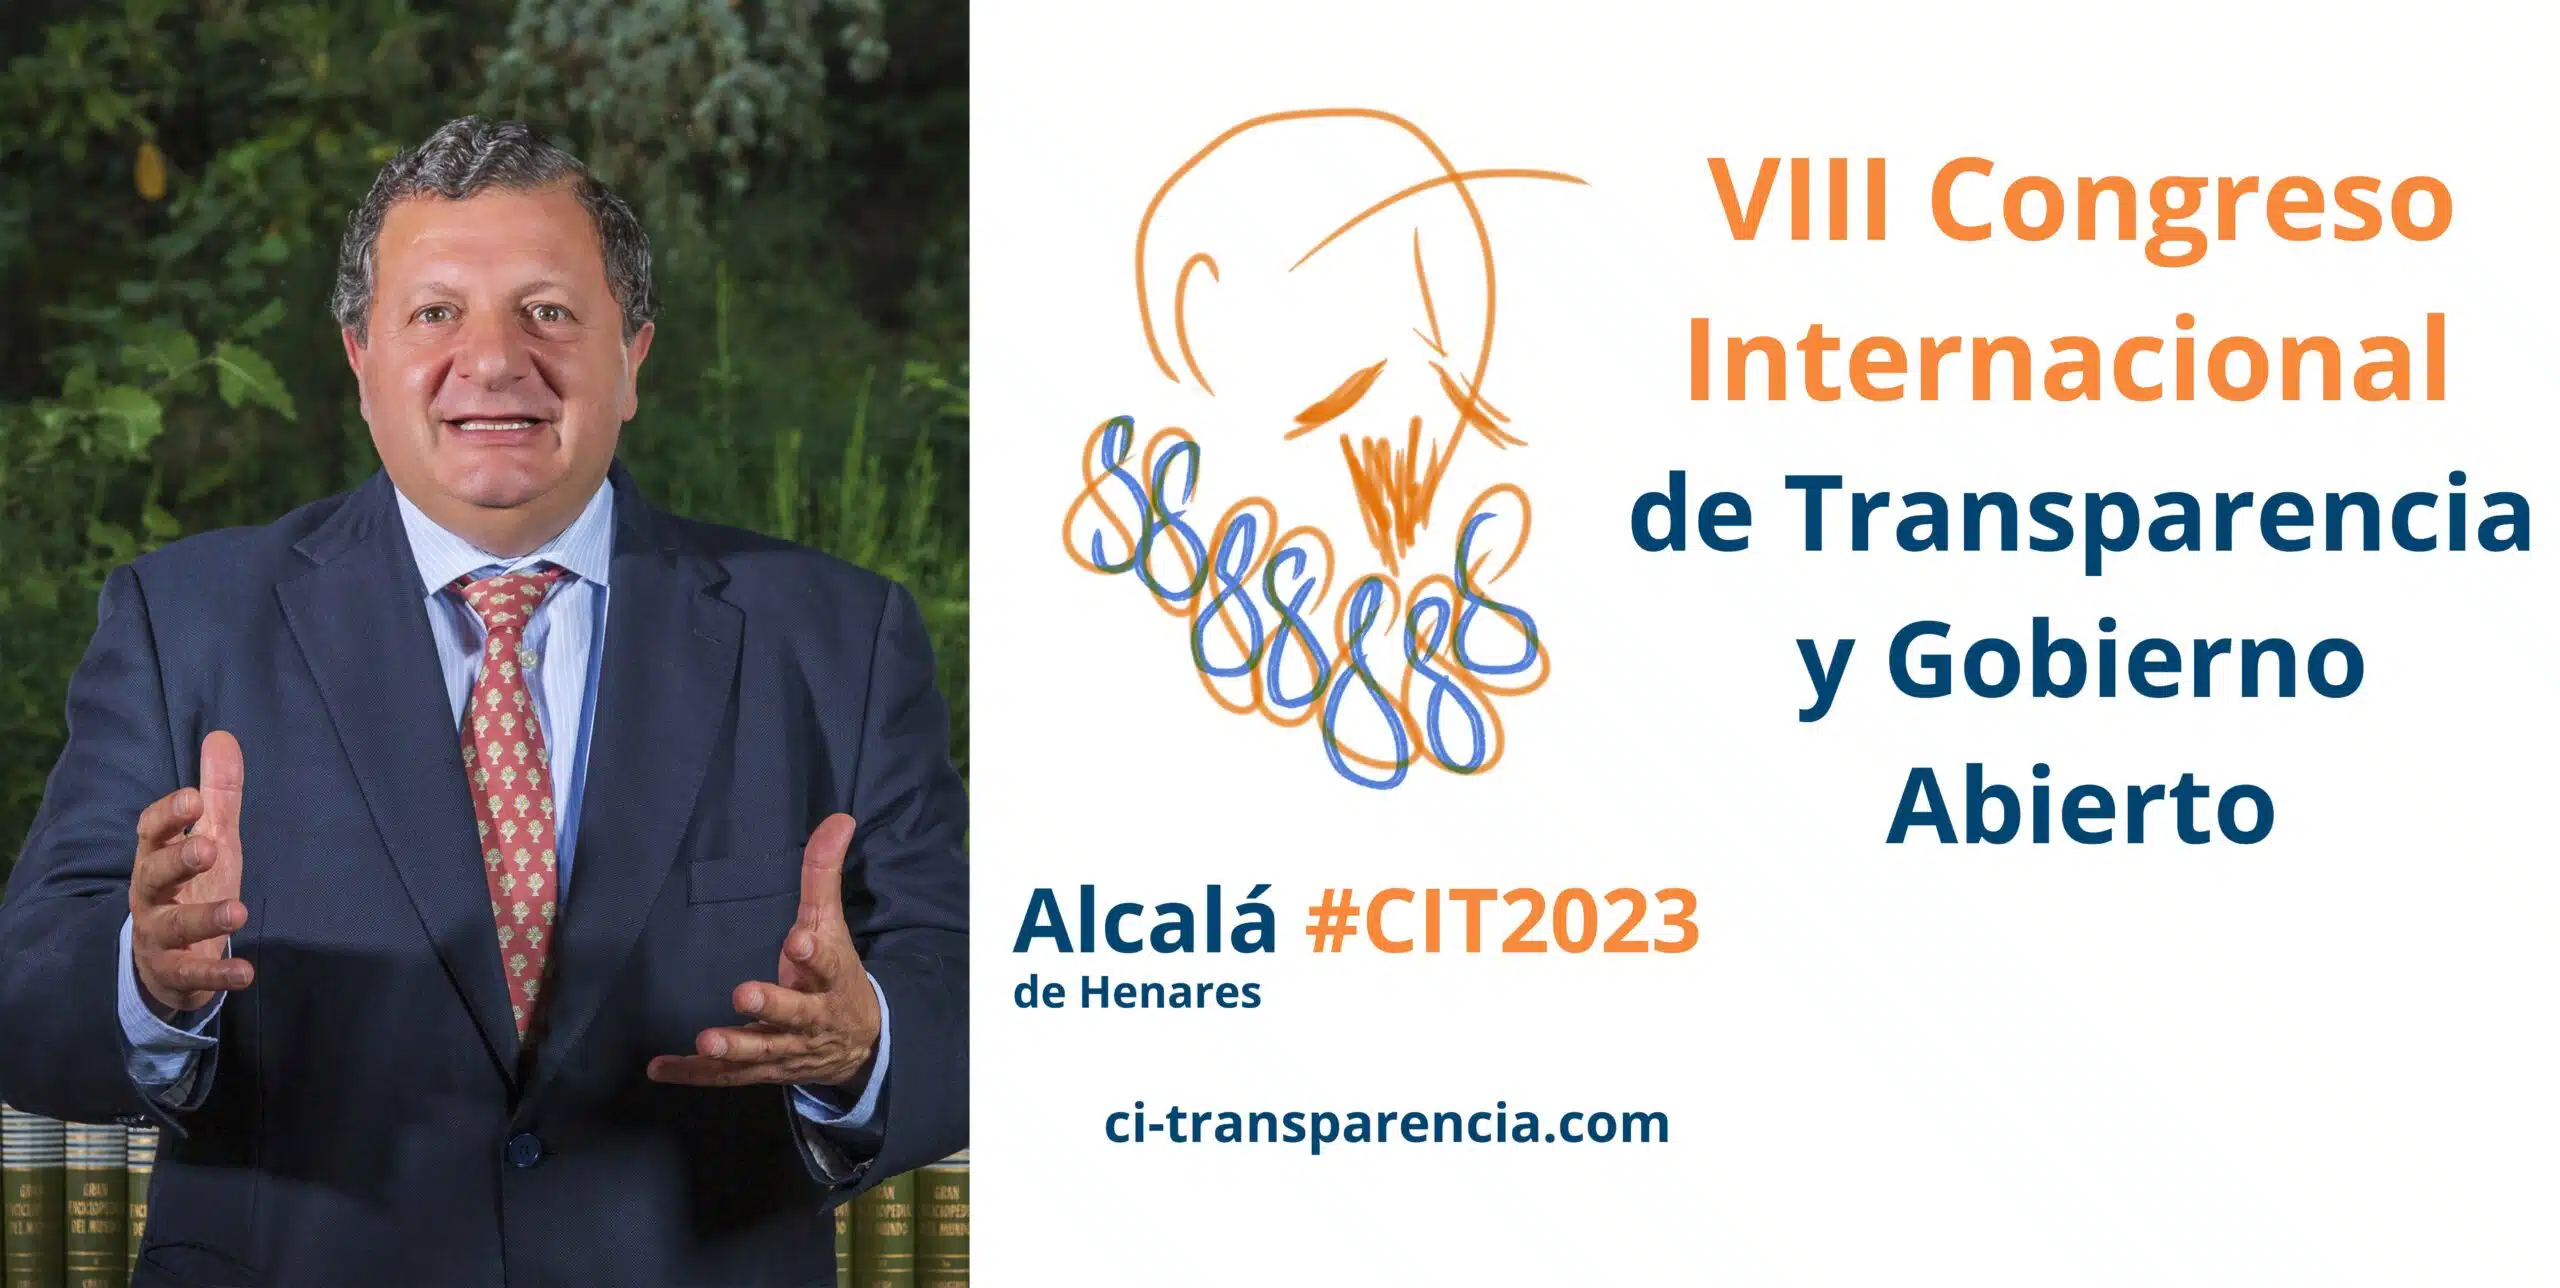 Manuel Sánchez de Diego: “La transparencia es una palanca que permite mejorar la actuación pública”